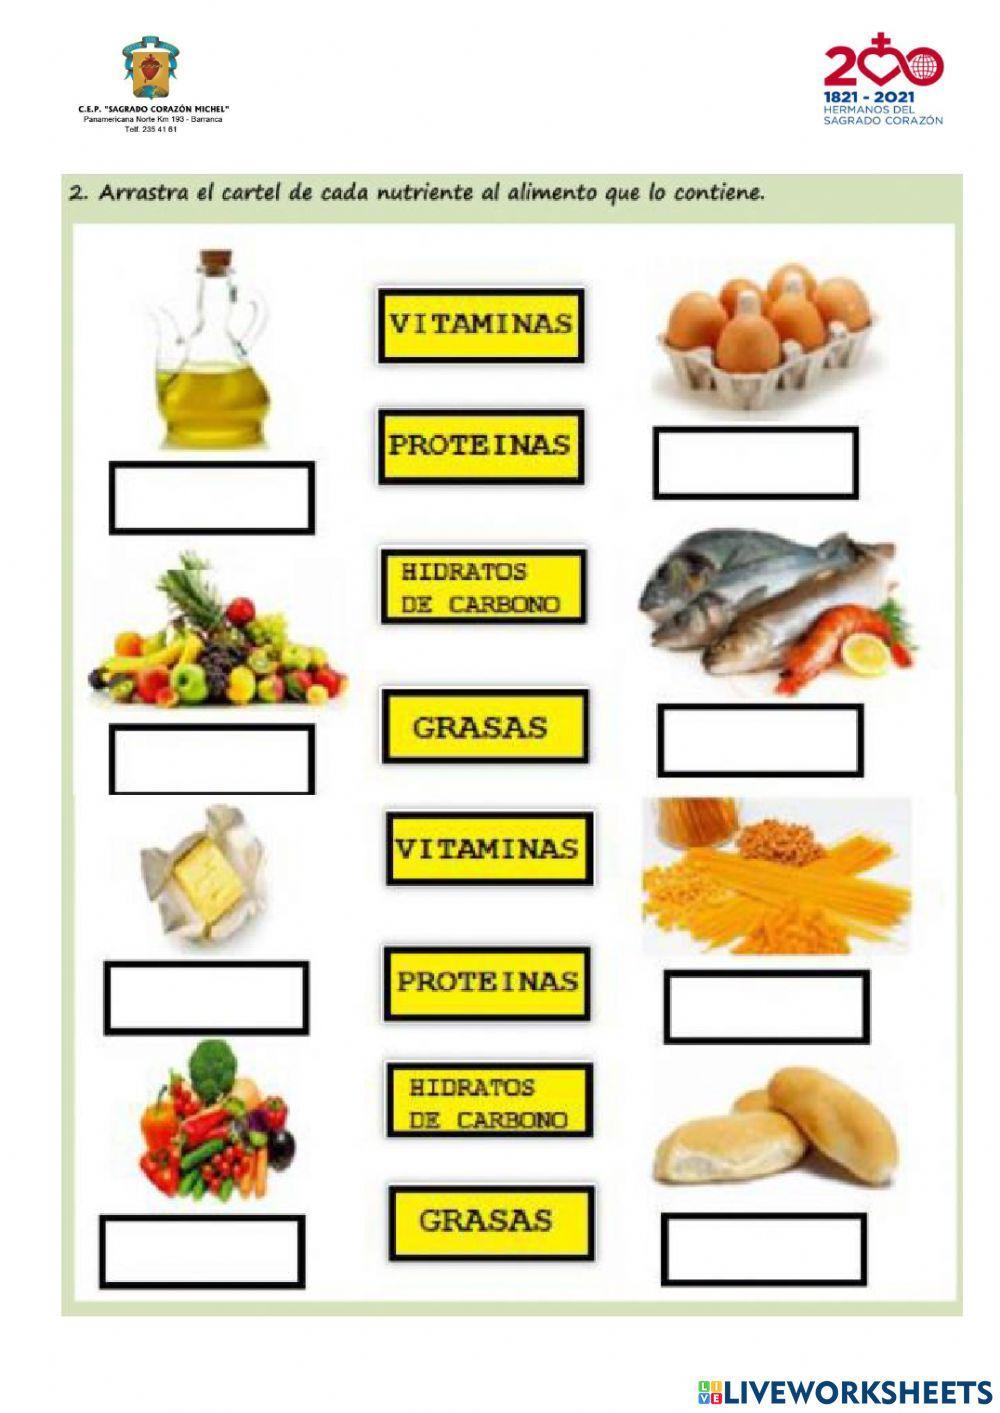 Alimentos y nutrientes